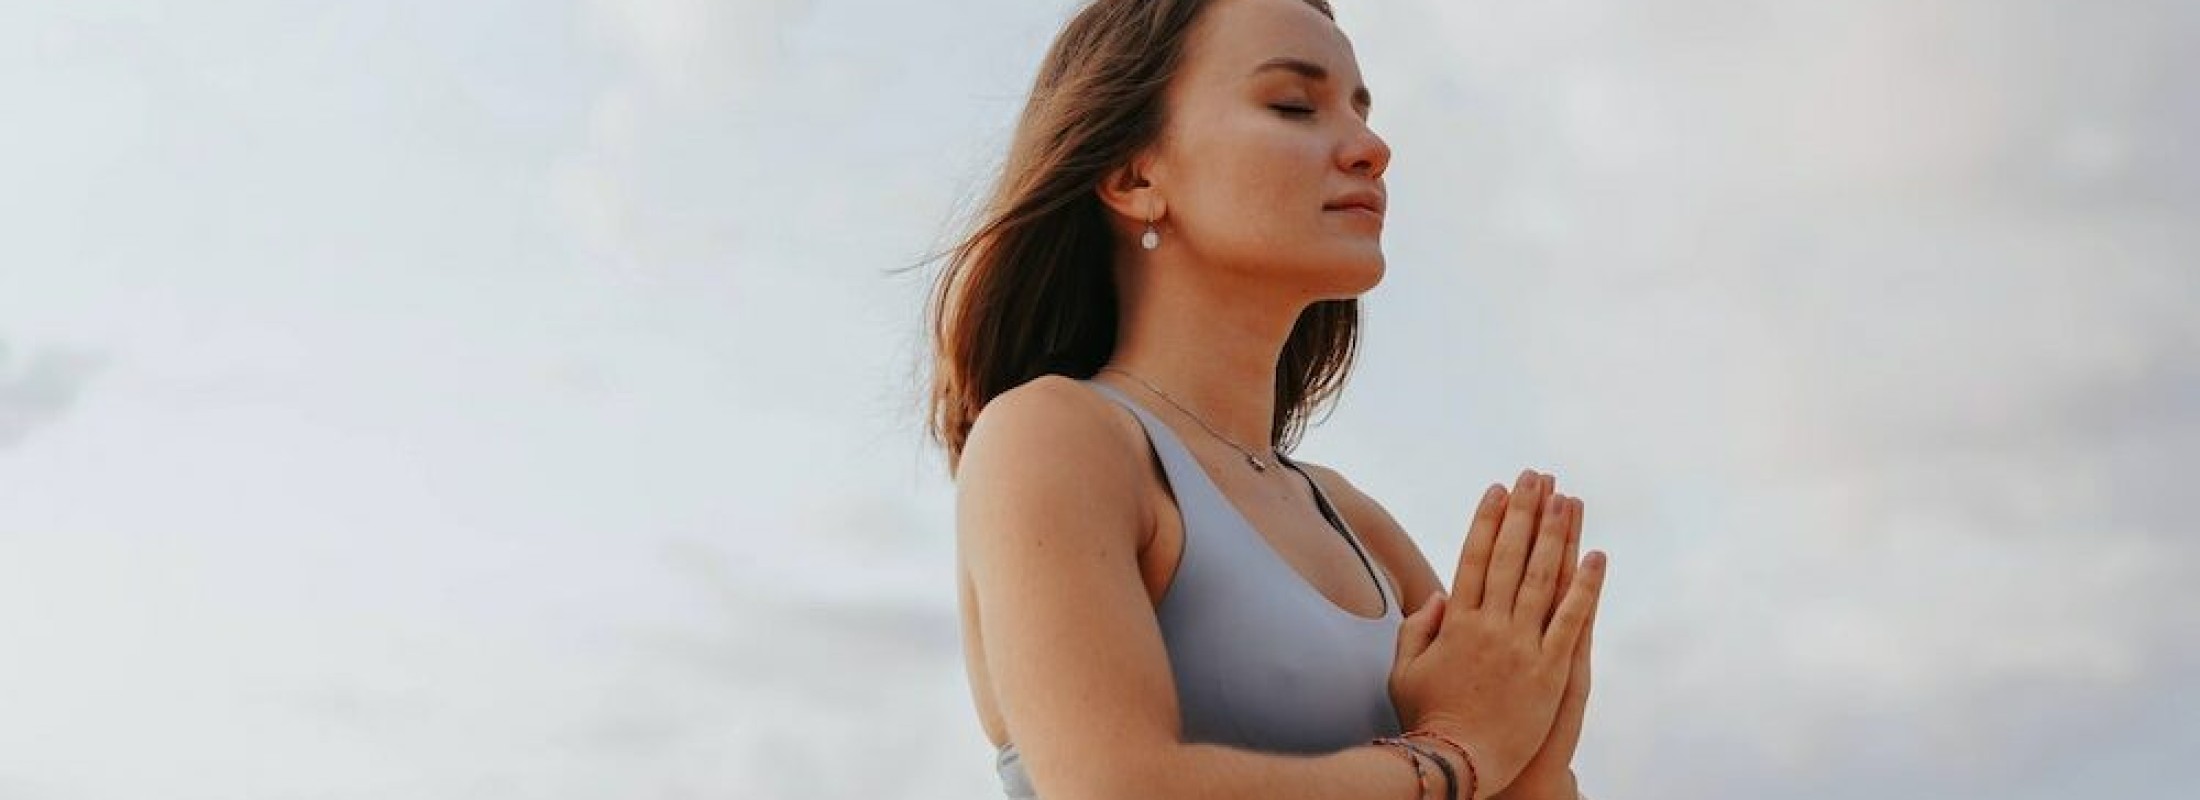 immuunsysteem versterken met ademhaling en meditatie